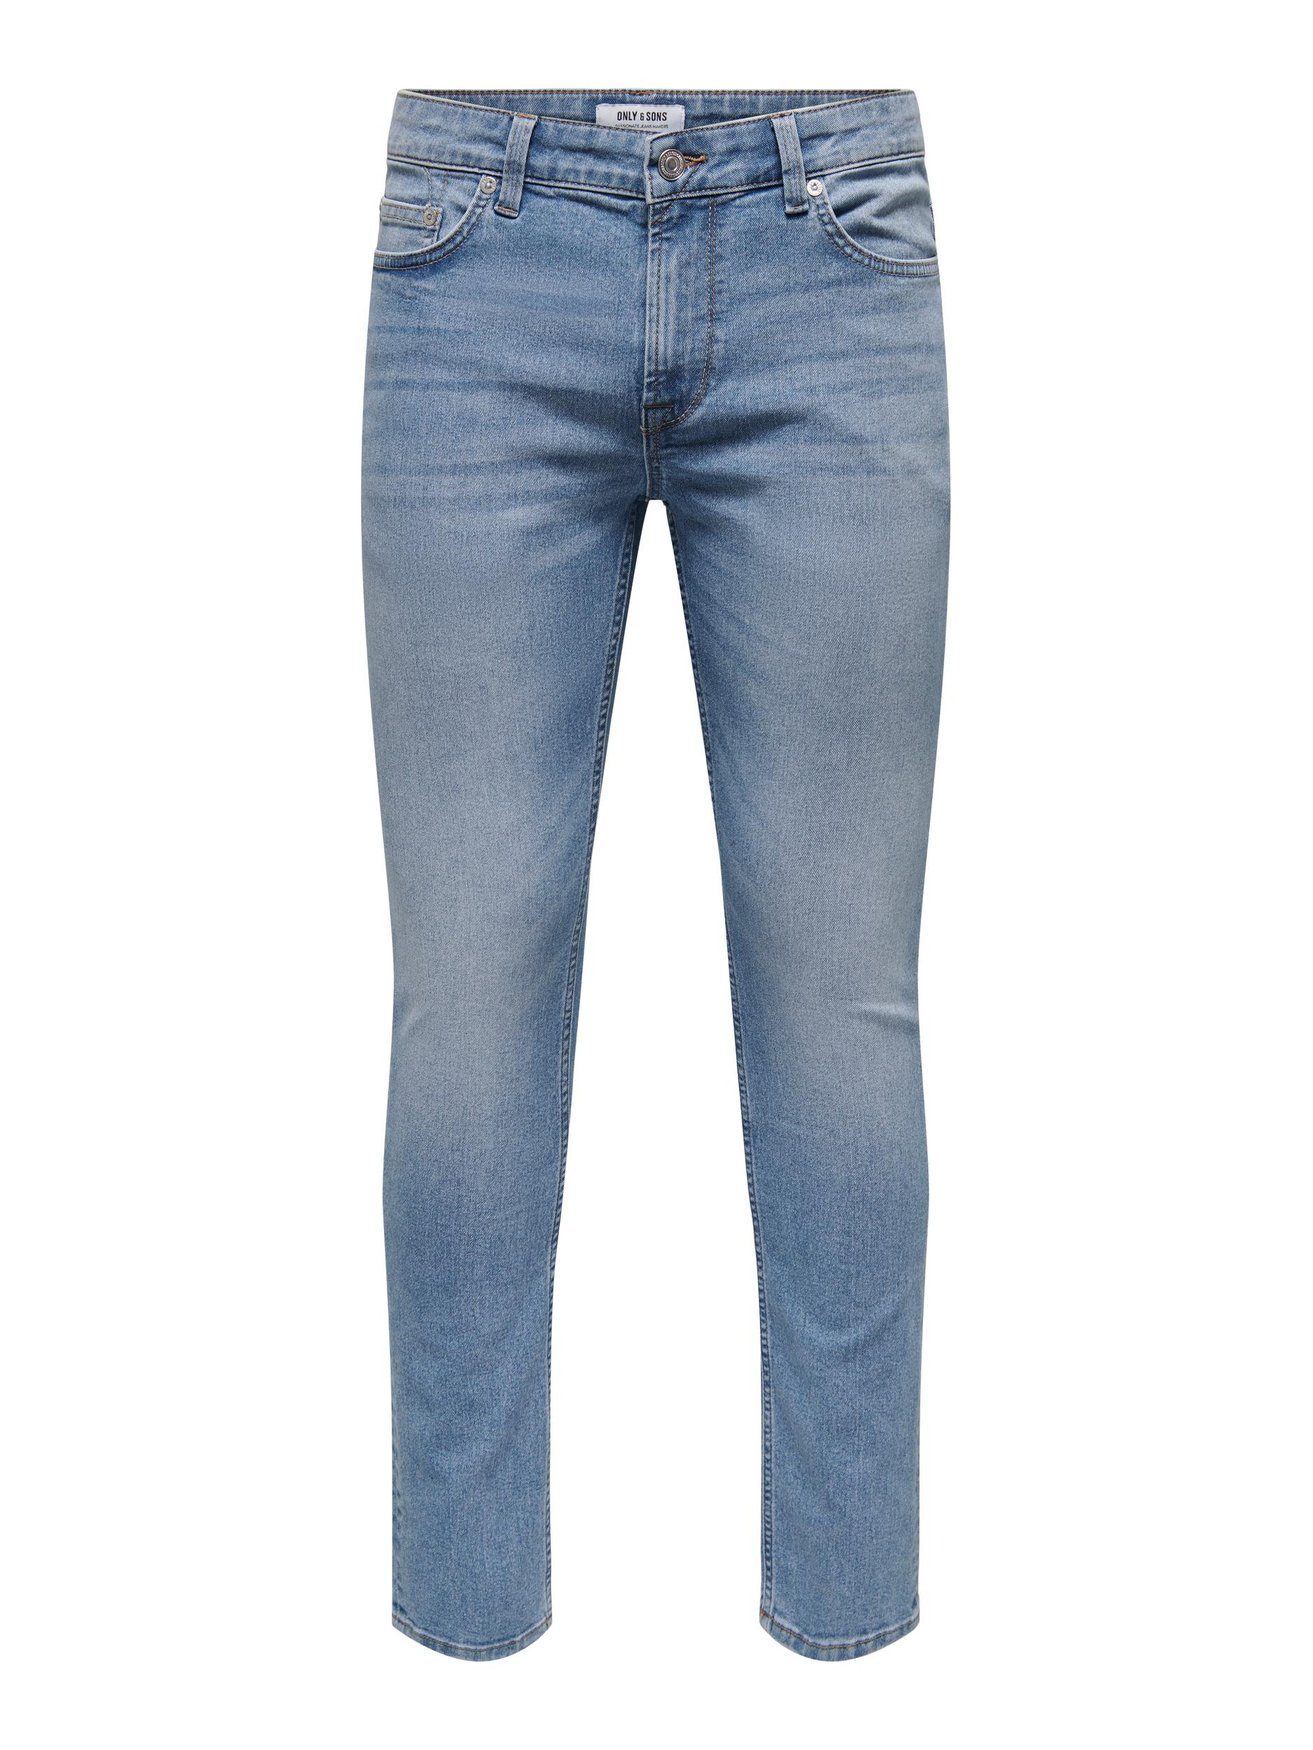 niedrigeren Preis kaufen ONLY & SONS Slim-fit-Jeans Slim ONSLOOM 5615 Hose Stoned Jeans Pants in Washed Hellblau Fit Denim Basic